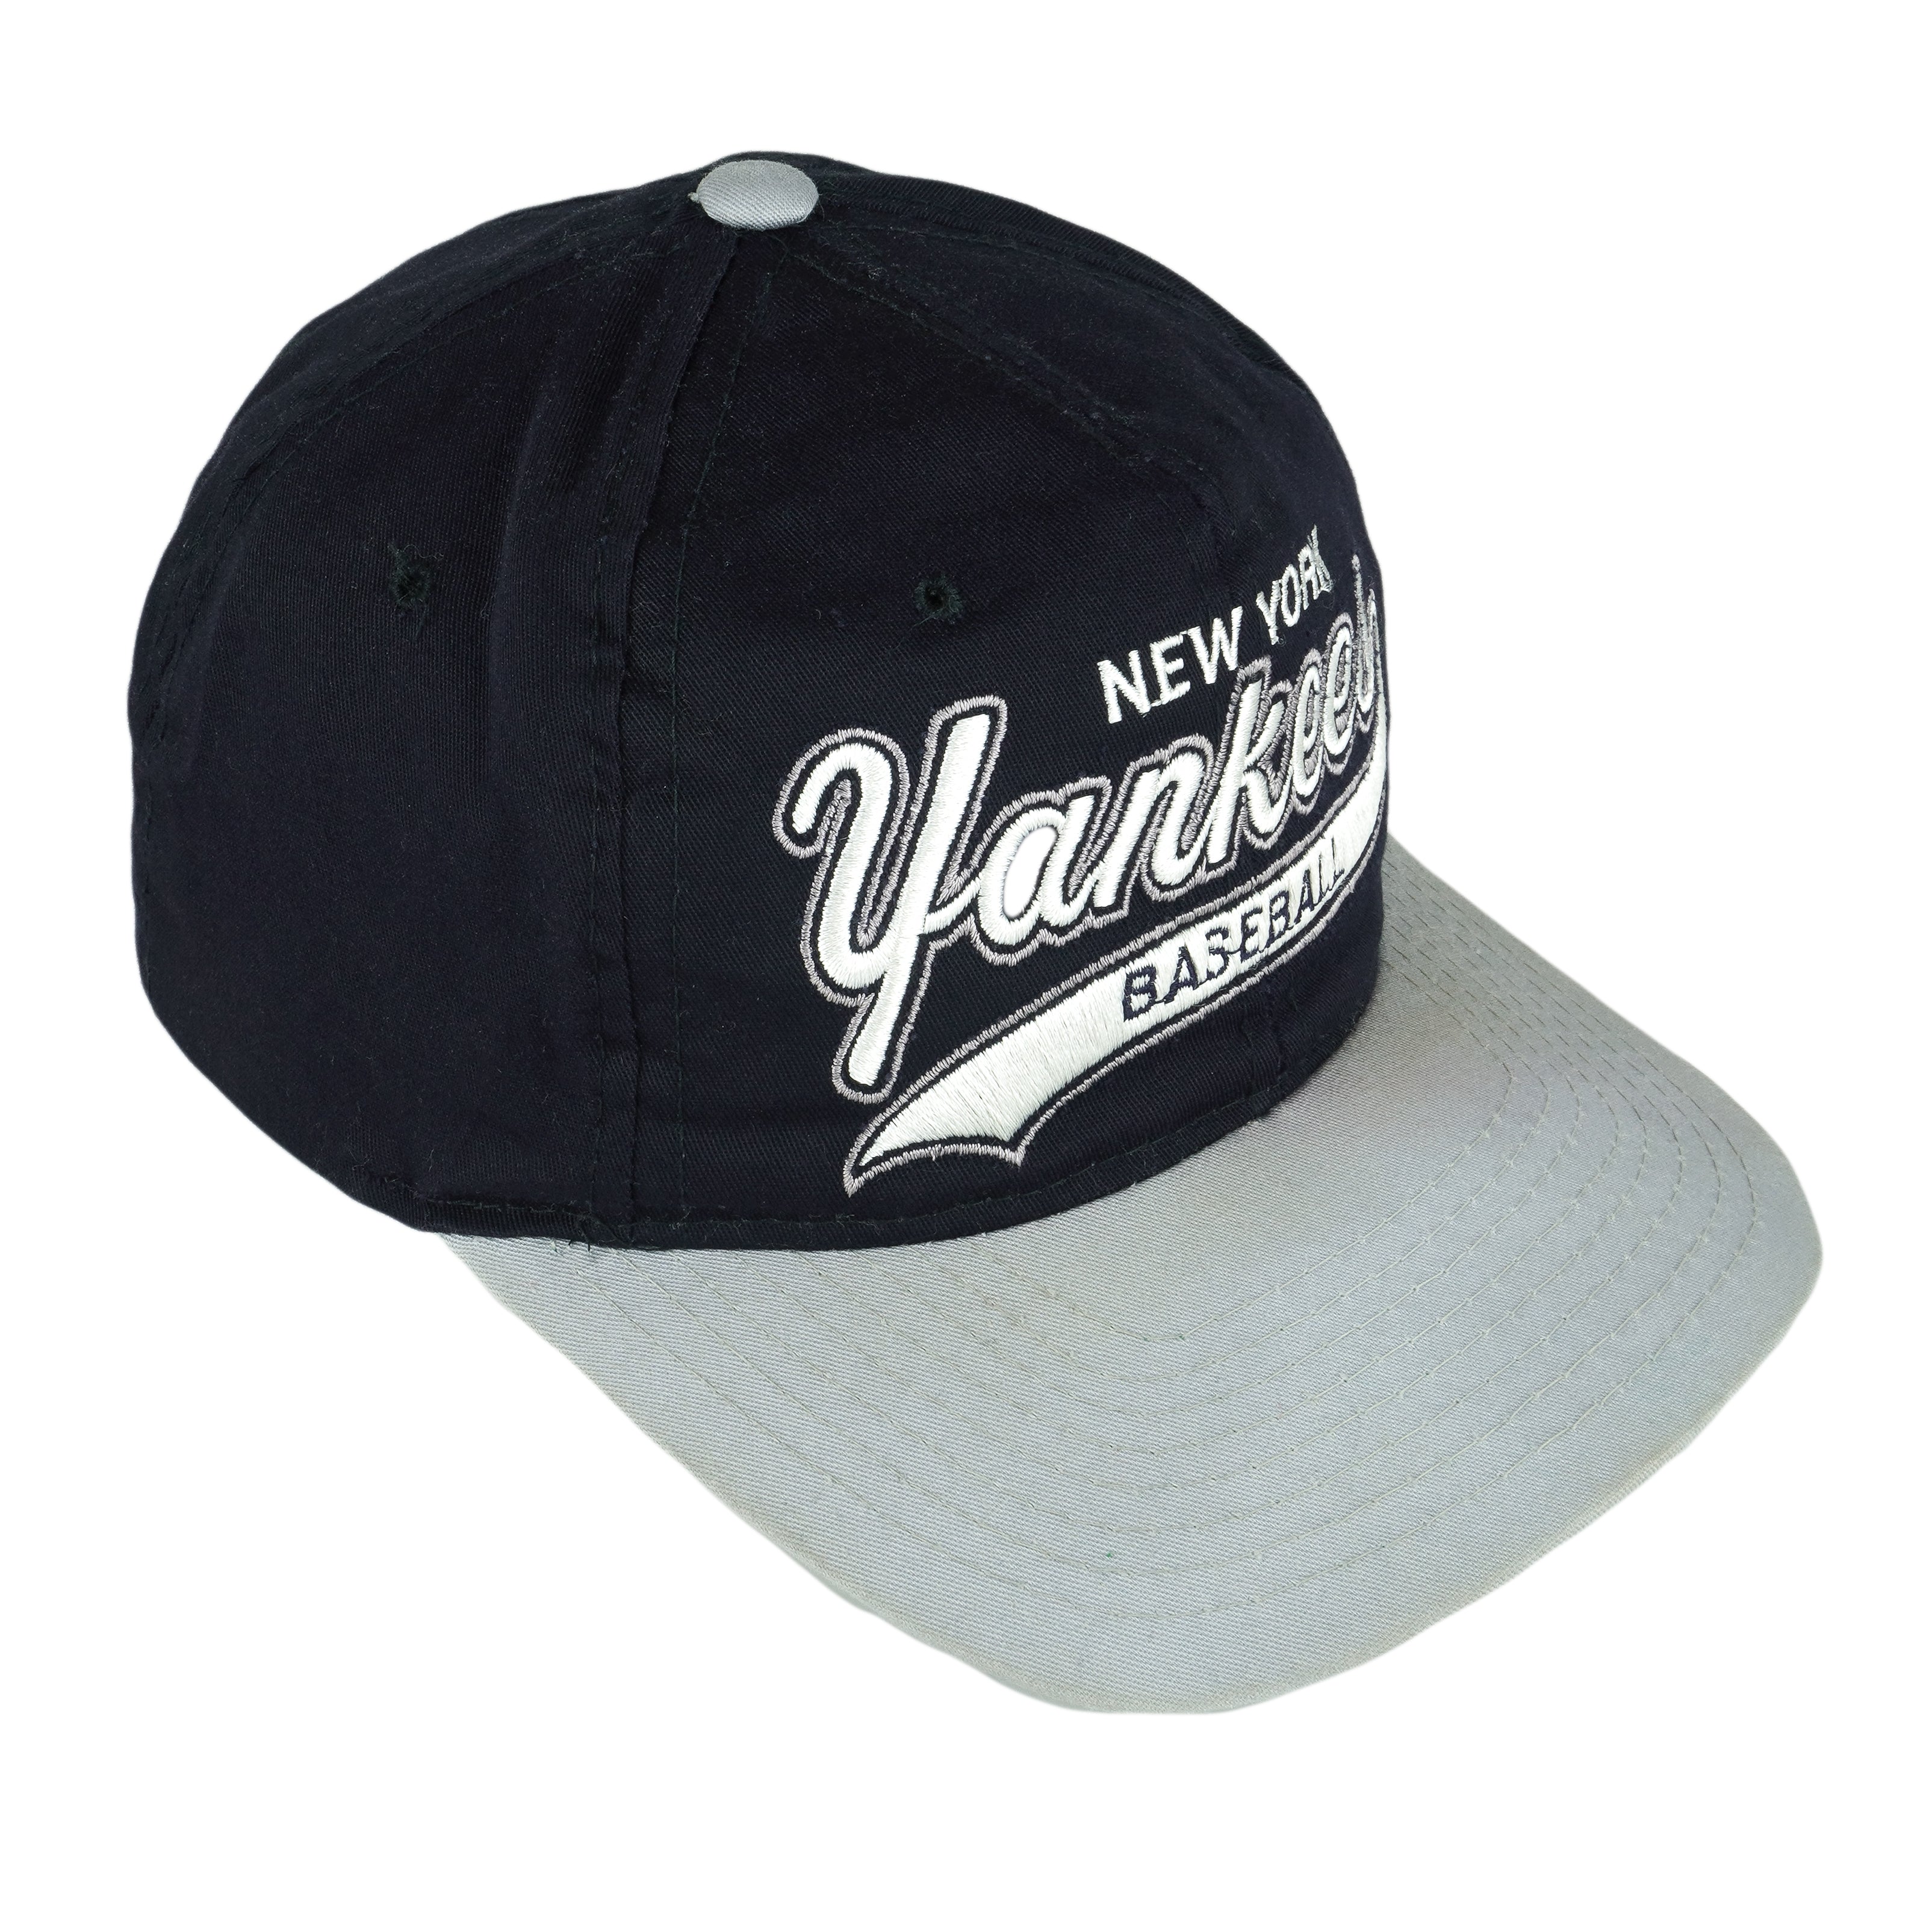 Vintage 90s New York Yankees Snapback Hat, Fit